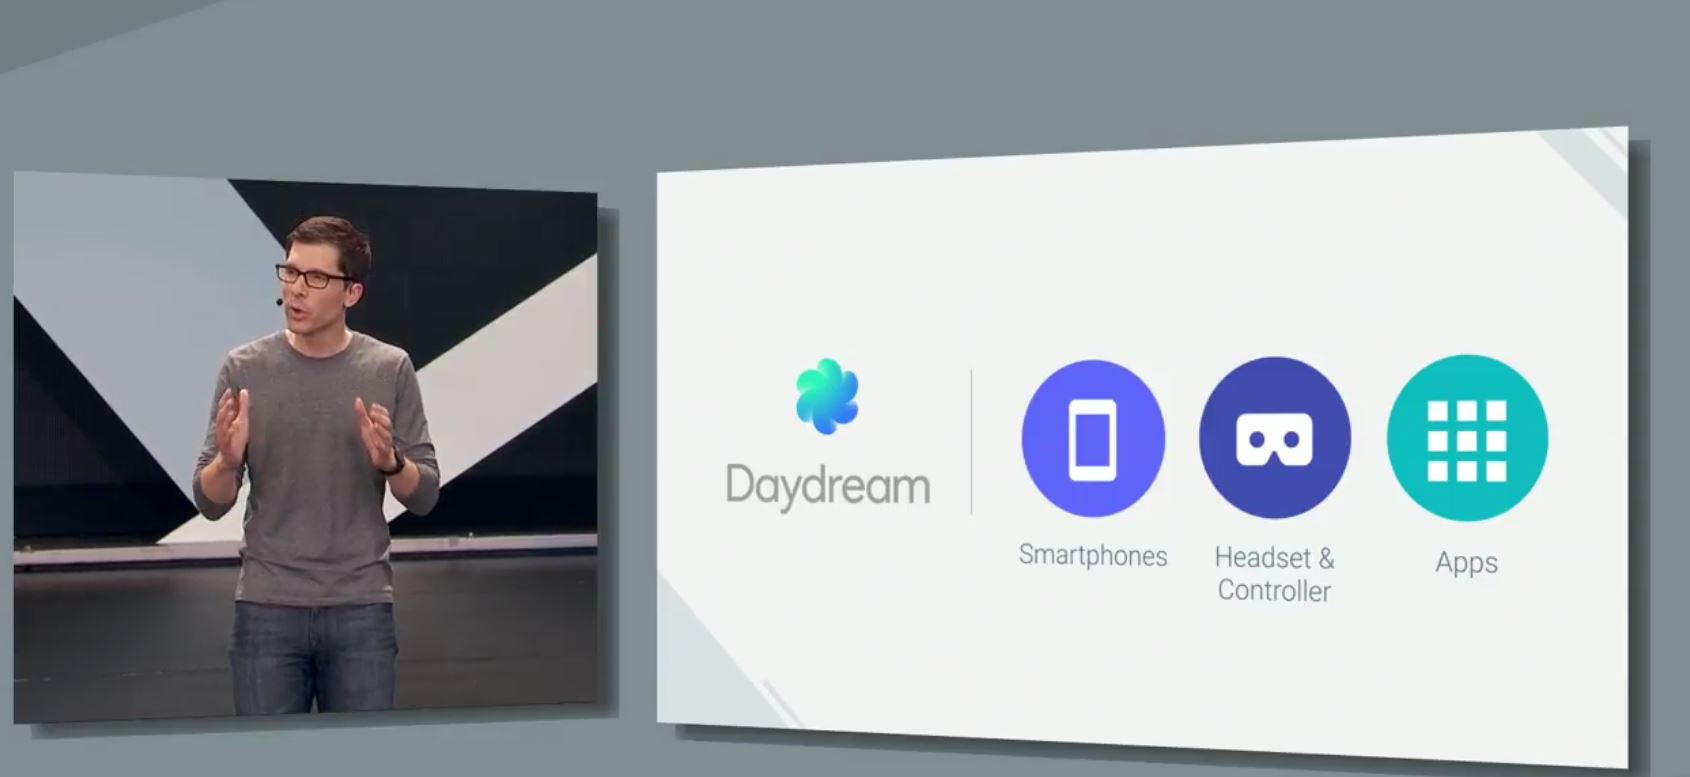 Daydream platform